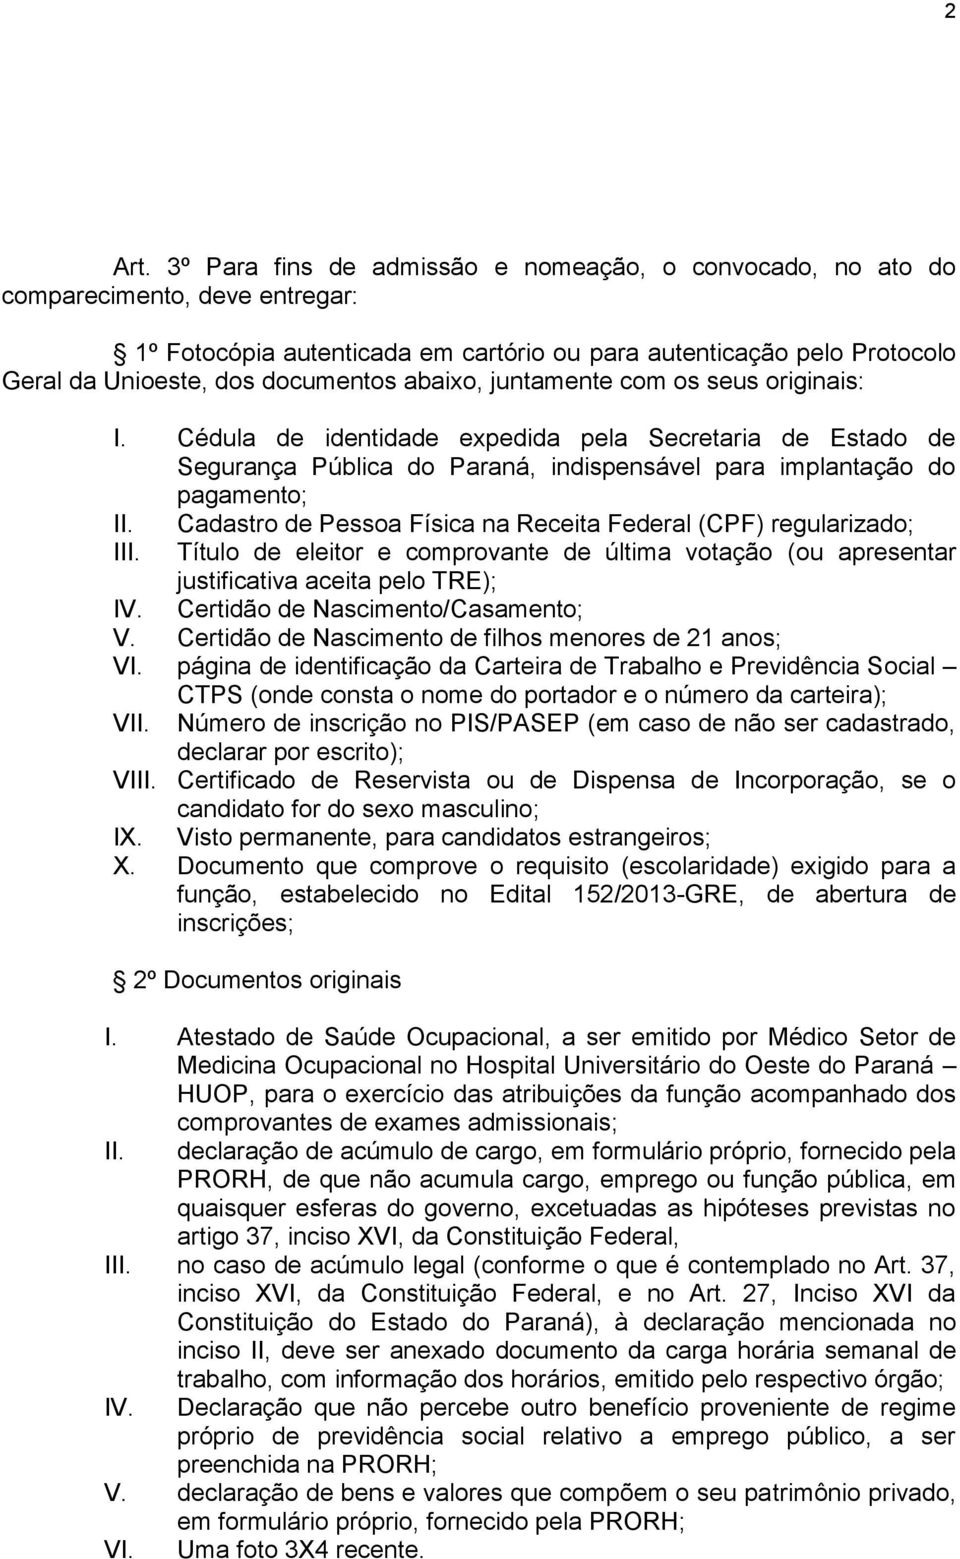 abaixo, juntamente com os seus originais: I. Cédula de identidade expedida pela Secretaria de Estado de Segurança Pública do Paraná, indispensável para implantação do pagamento; II.